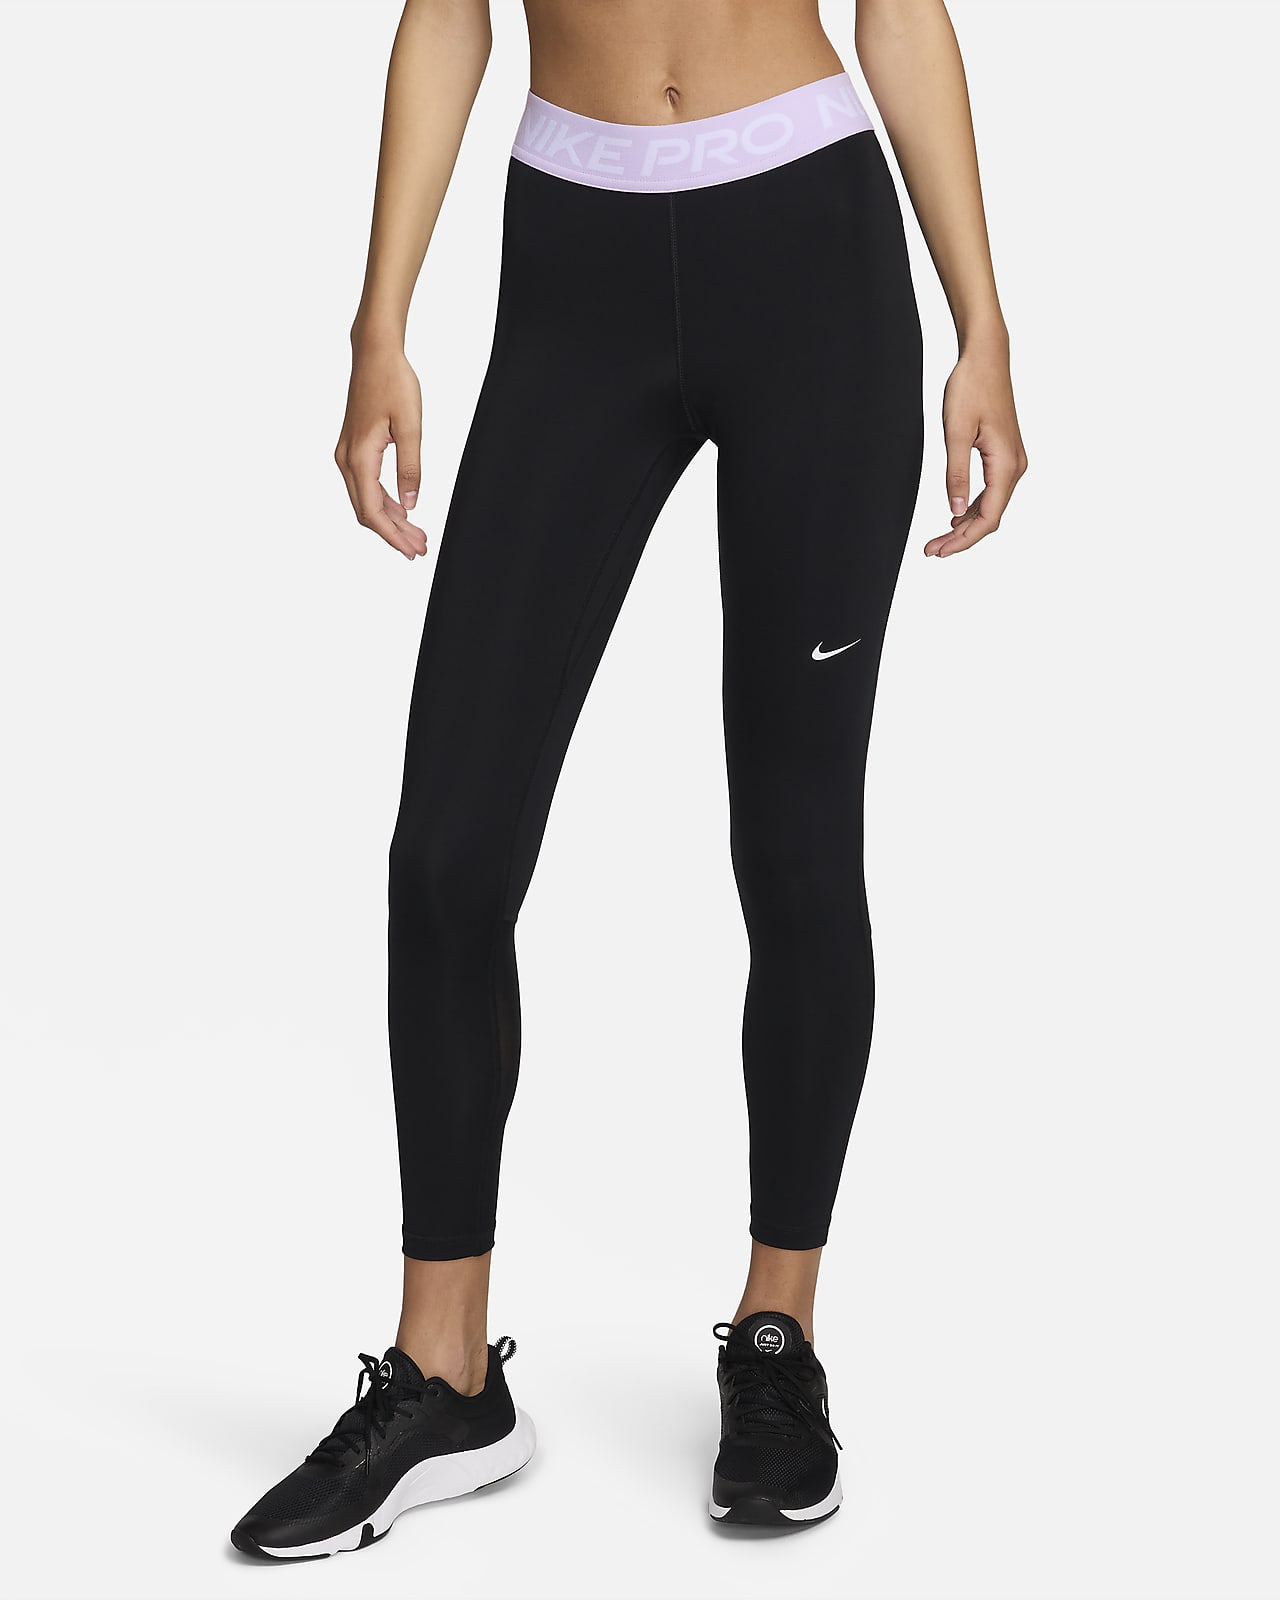 Nike Pro 365 Leggings de 7/8 de talle medio - Mujer